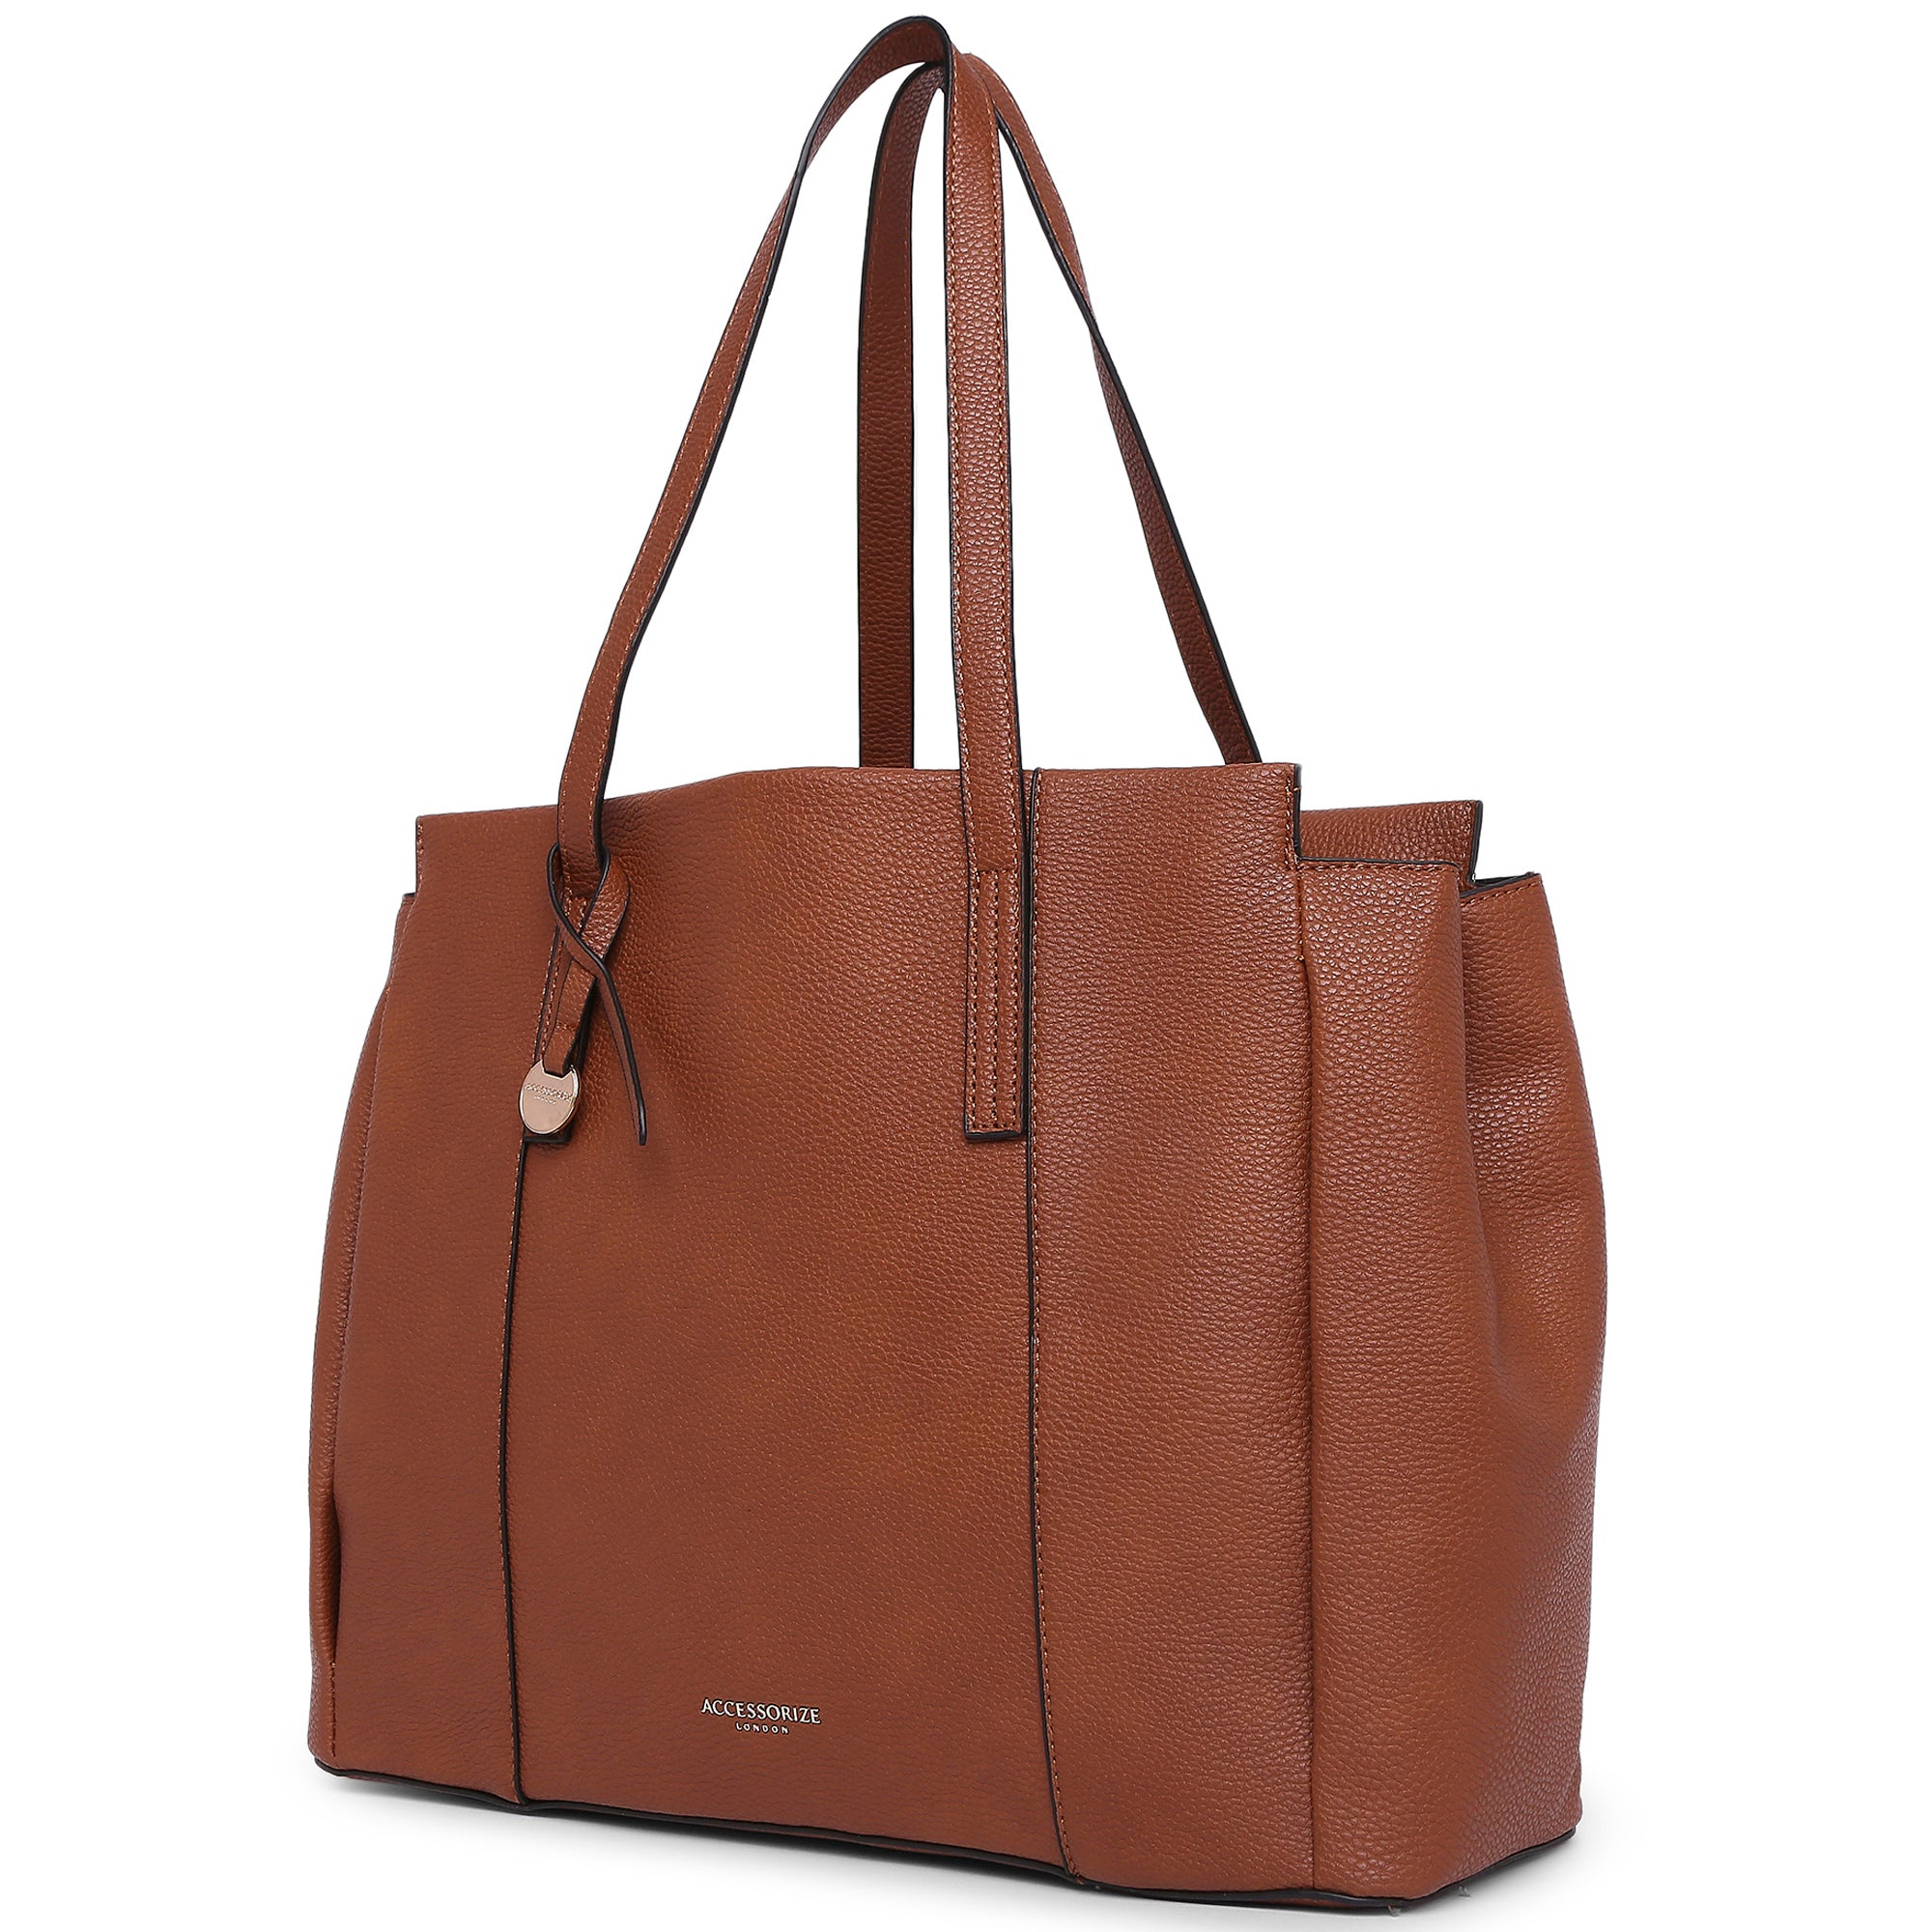 Accessorize London Women's Faux Leather Tan Lauren Workbag